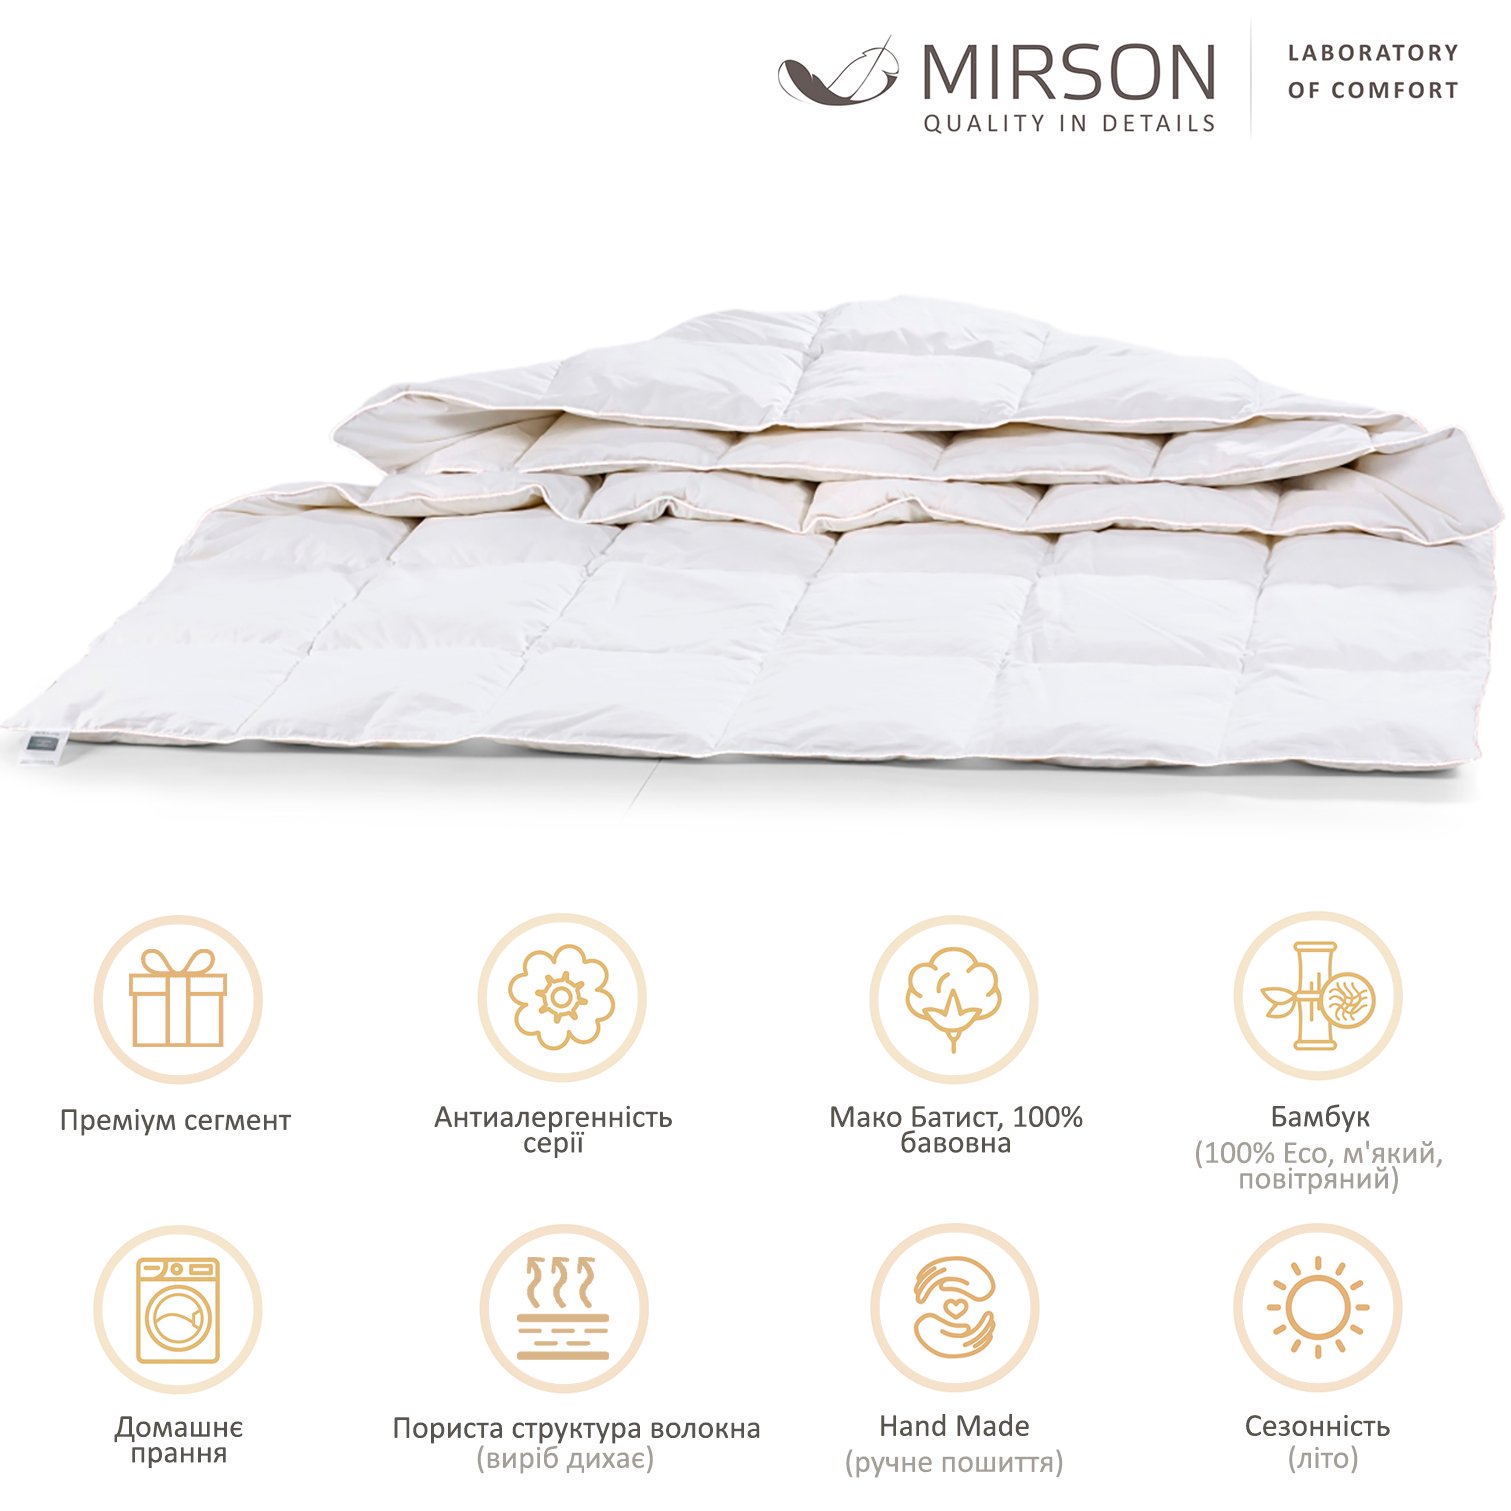 Одеяло бамбуковое MirSon Luxury Exclusive №1375, летнее, 200x220 см, белое - фото 6